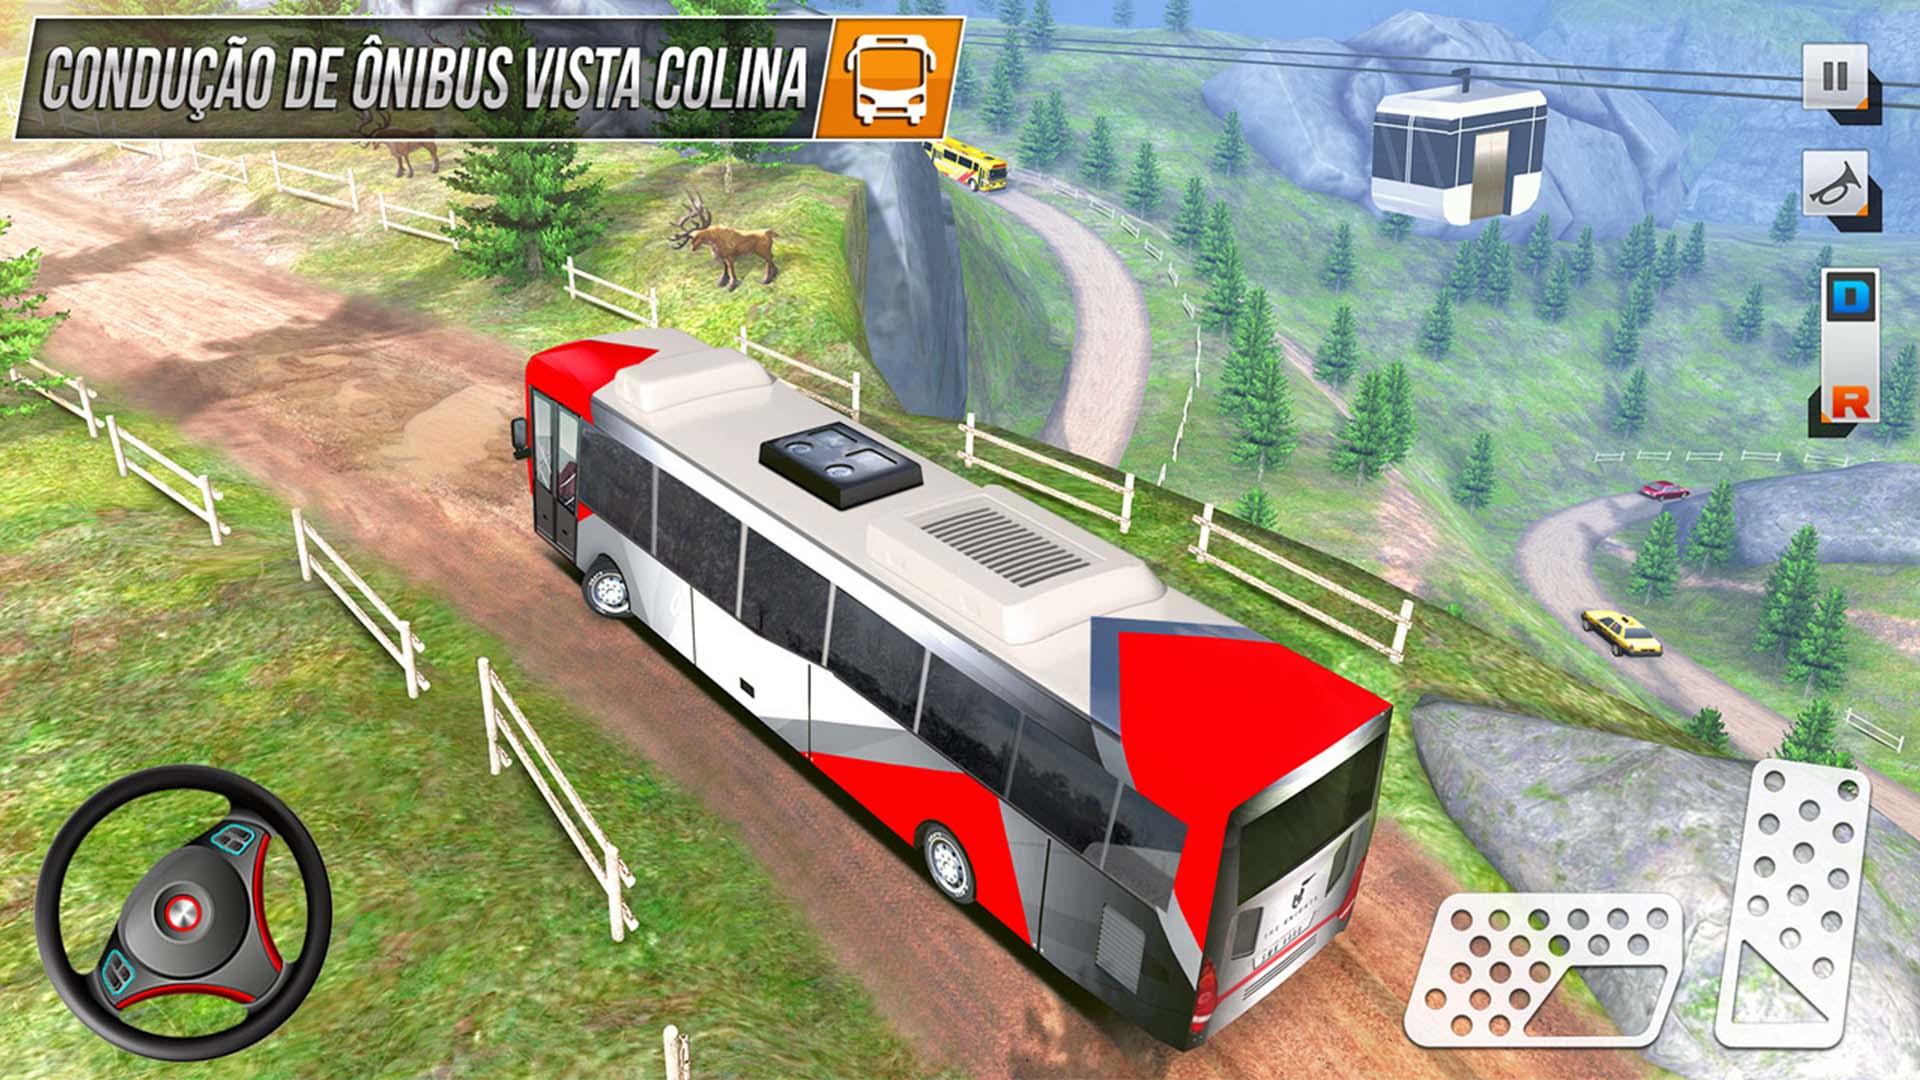 Download do APK de Dirigir Ônibus: Jogo Simulador para Android